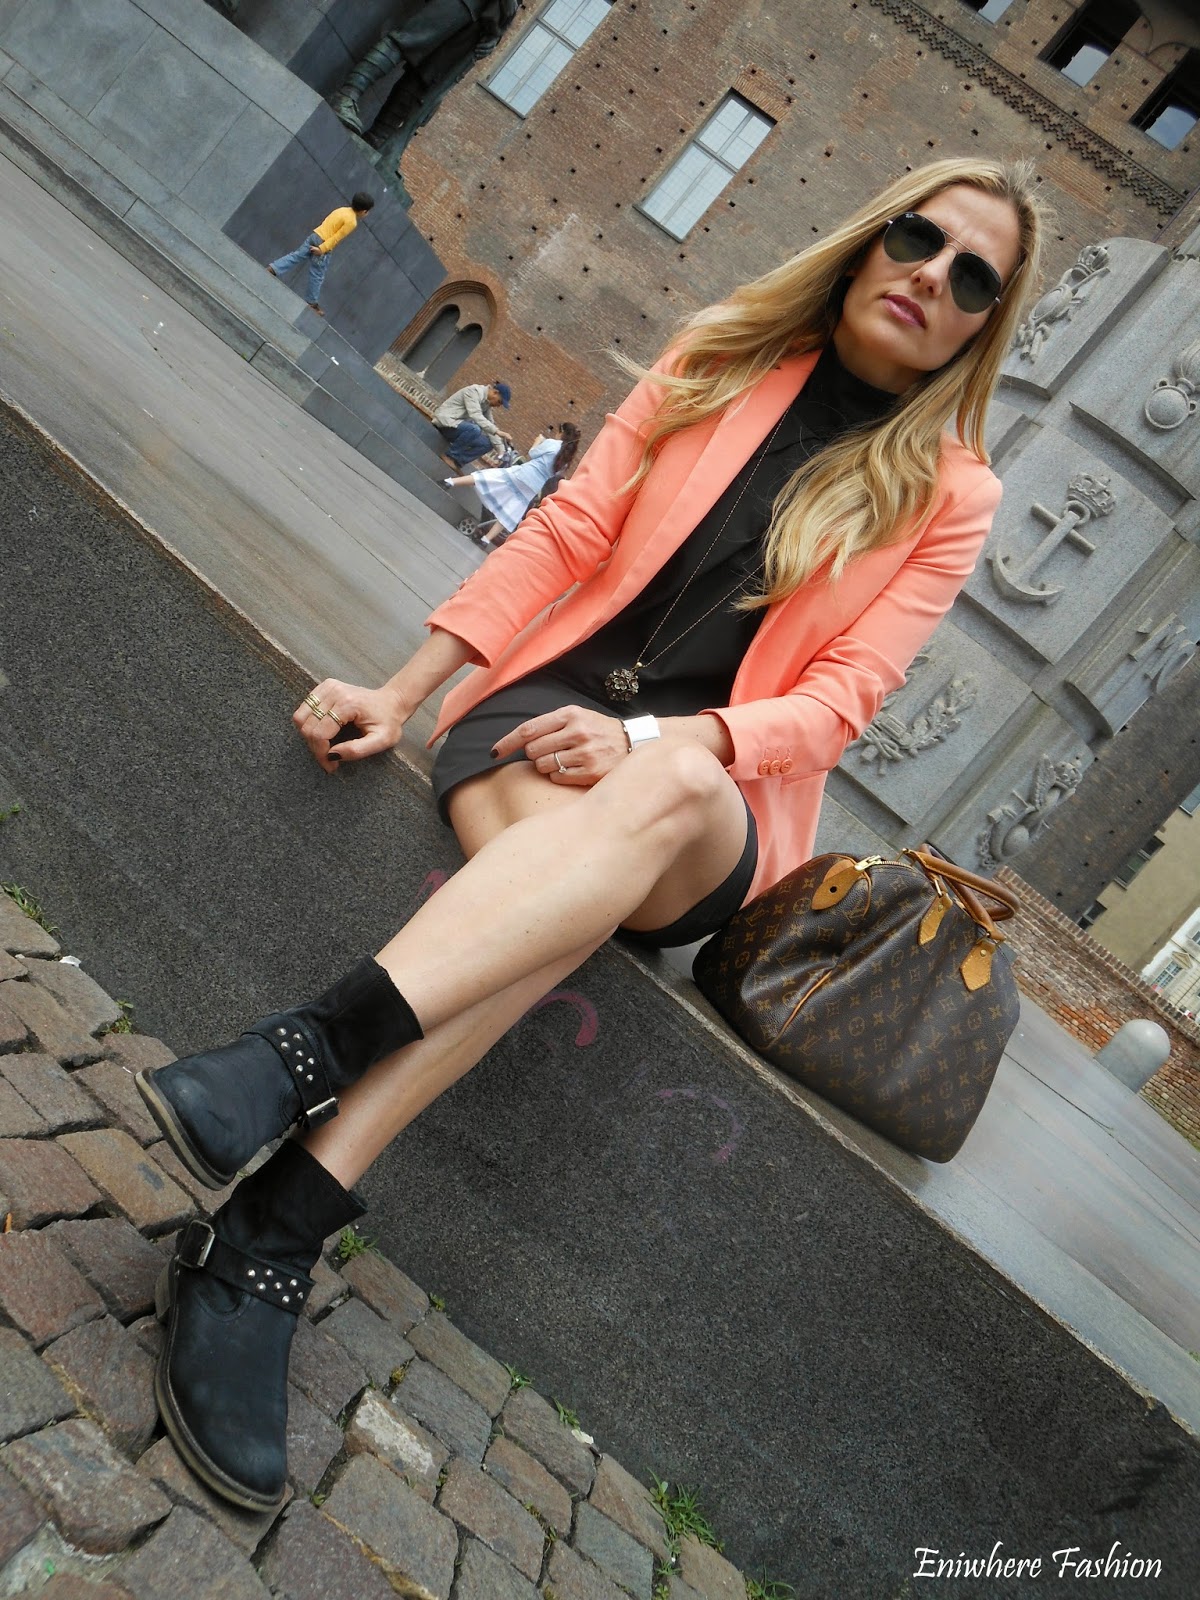 Eniwhere Fashion - Torino - giacca arancio - tubino nero